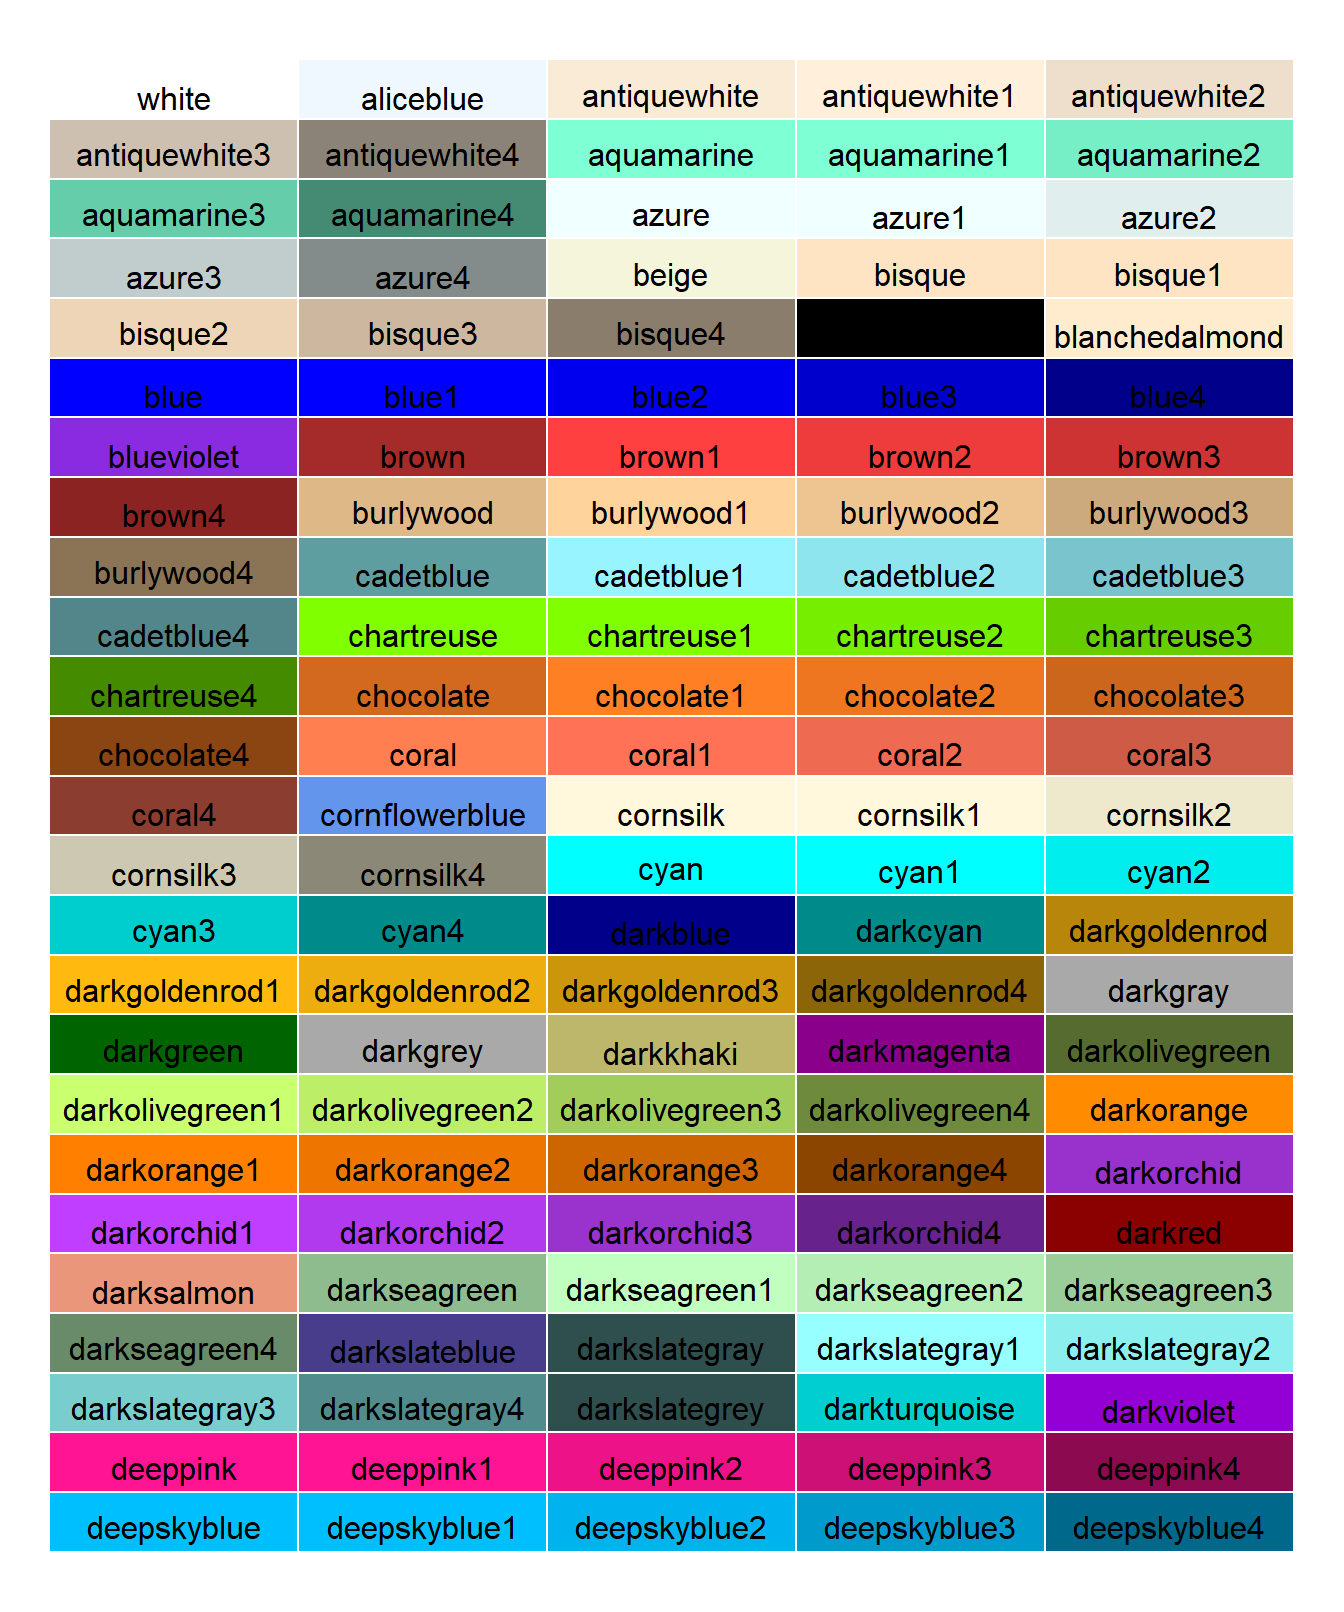 Tabla con una selección de colores con sus nombre asociados